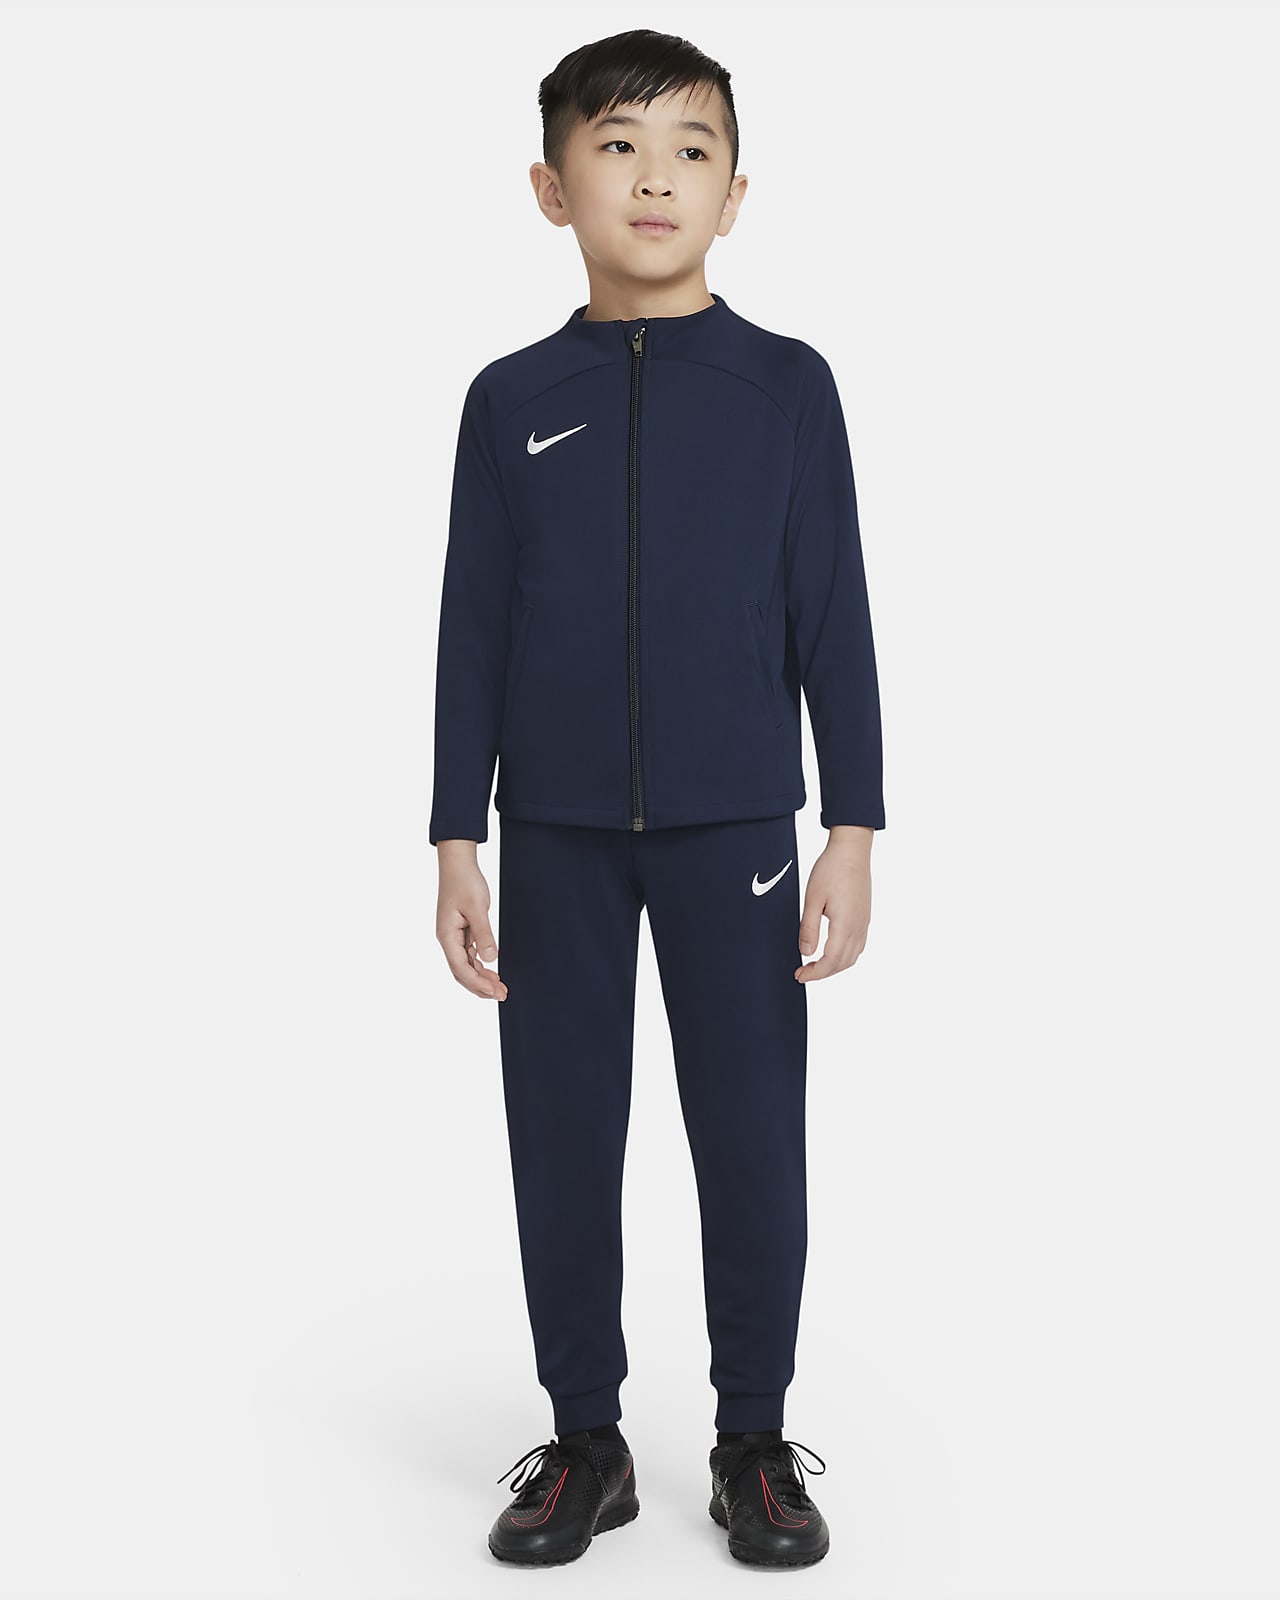 Nike Dri-FIT Academy Pro Xandall de teixit Knit de futbol - Nen/a petit/a